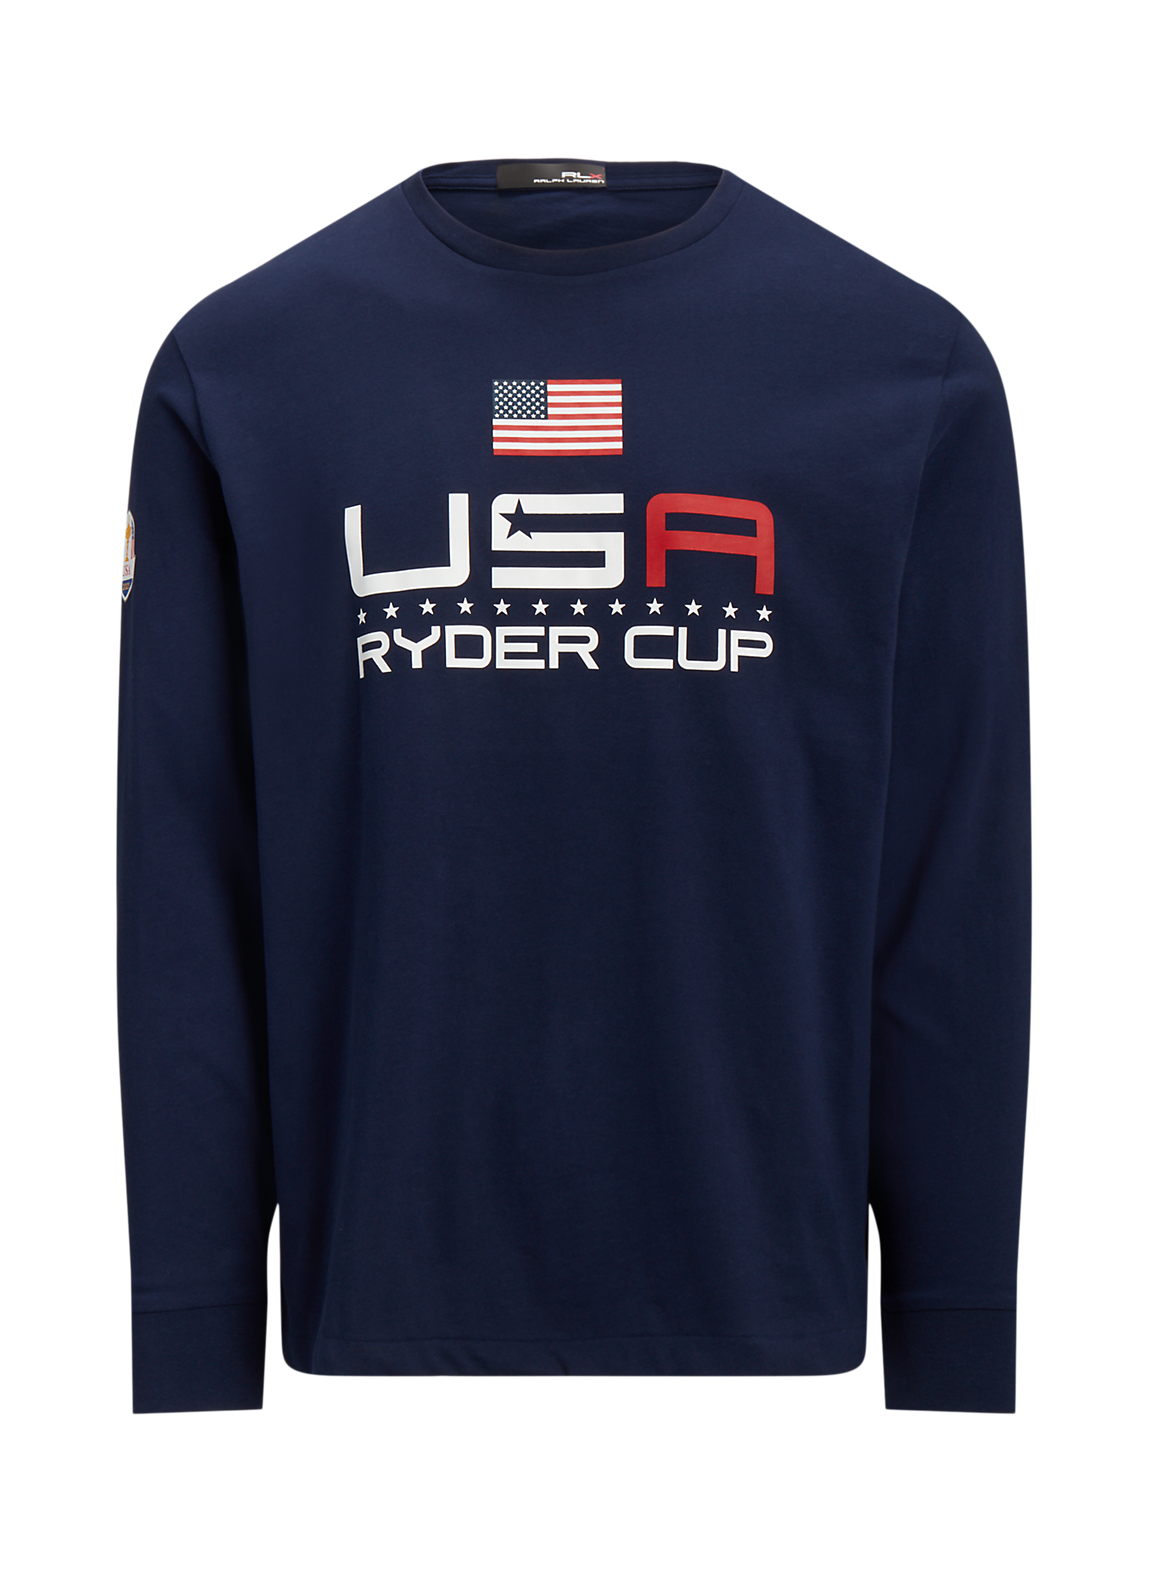 ラルフ ローレンが、ライダーカップ米国選抜チームのためにウェアを提供